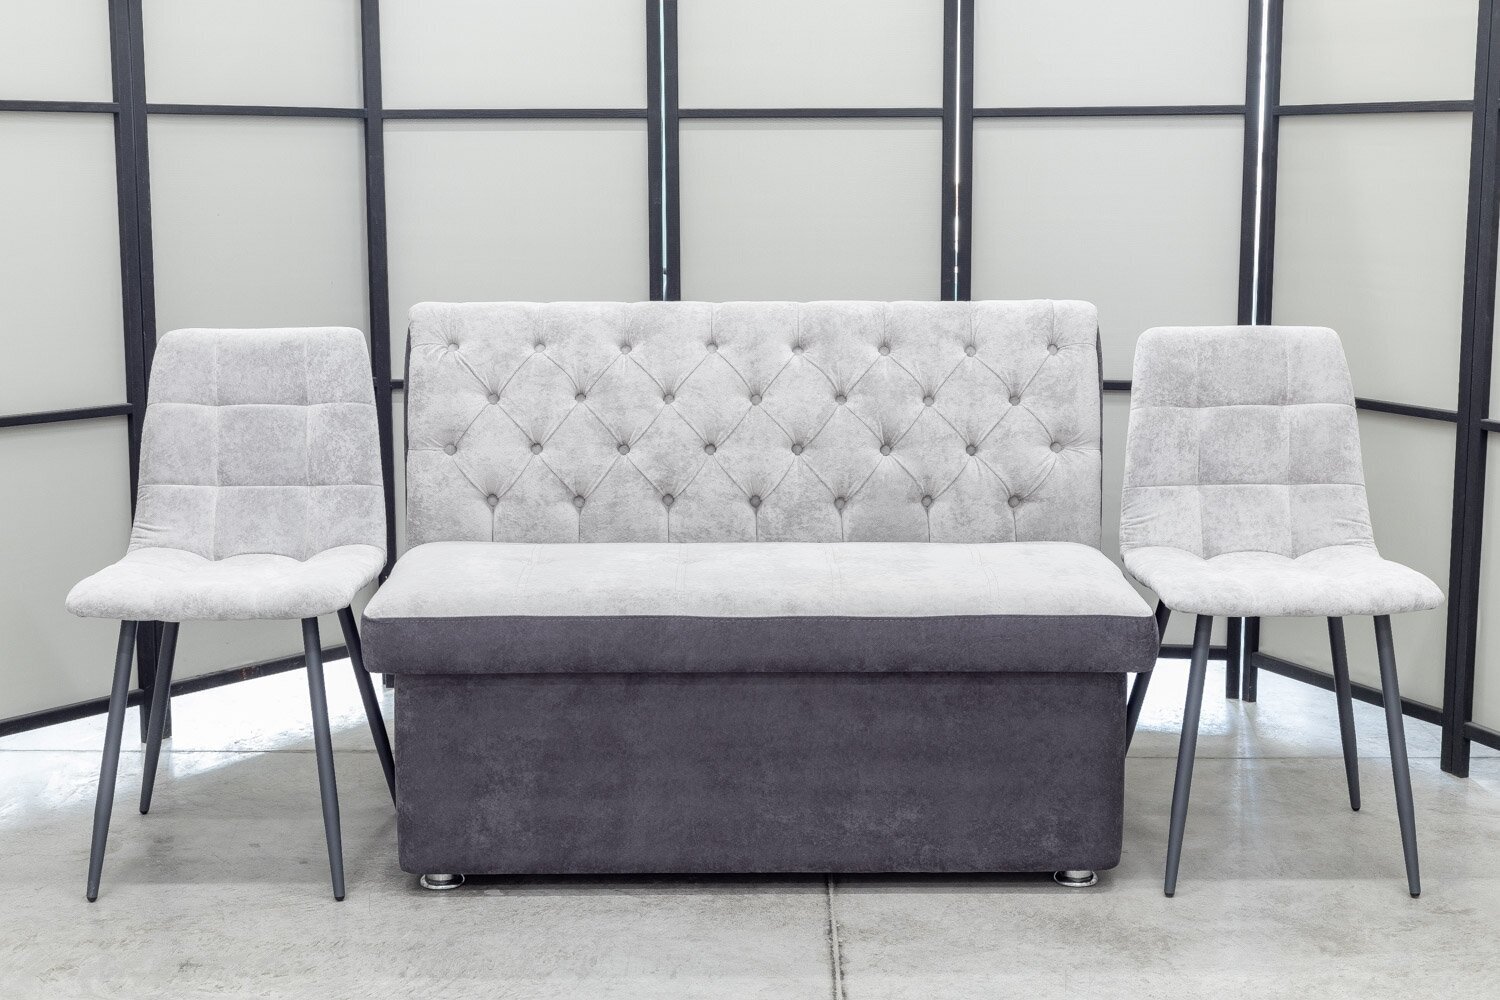 Кухонный диван Монро со стульями (2 шт.), 120х65 см, обивка моющаяся, антивандальная, антикоготь